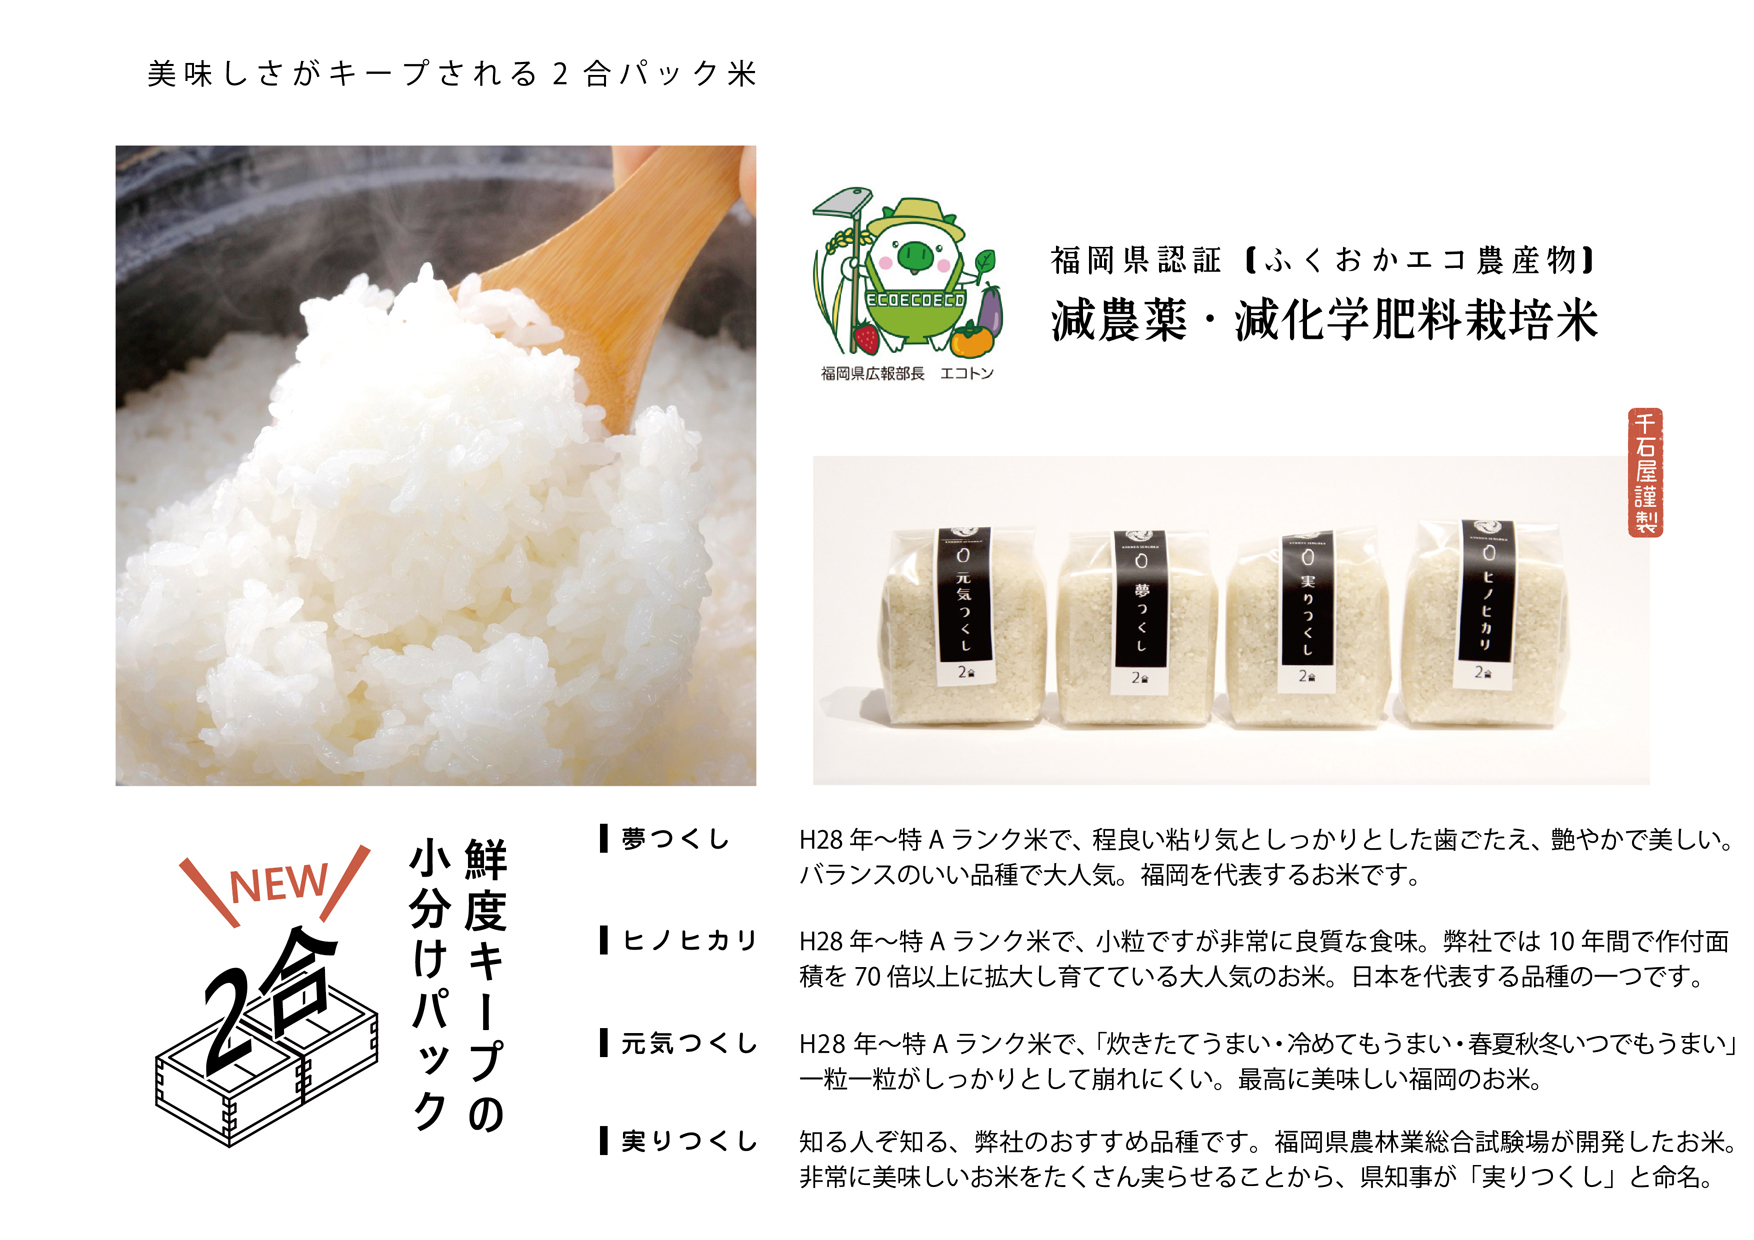 福岡県認証【ふくおかエコ農産物】減農薬・減化学肥料栽培米 美味しさがキープされる2合パック米